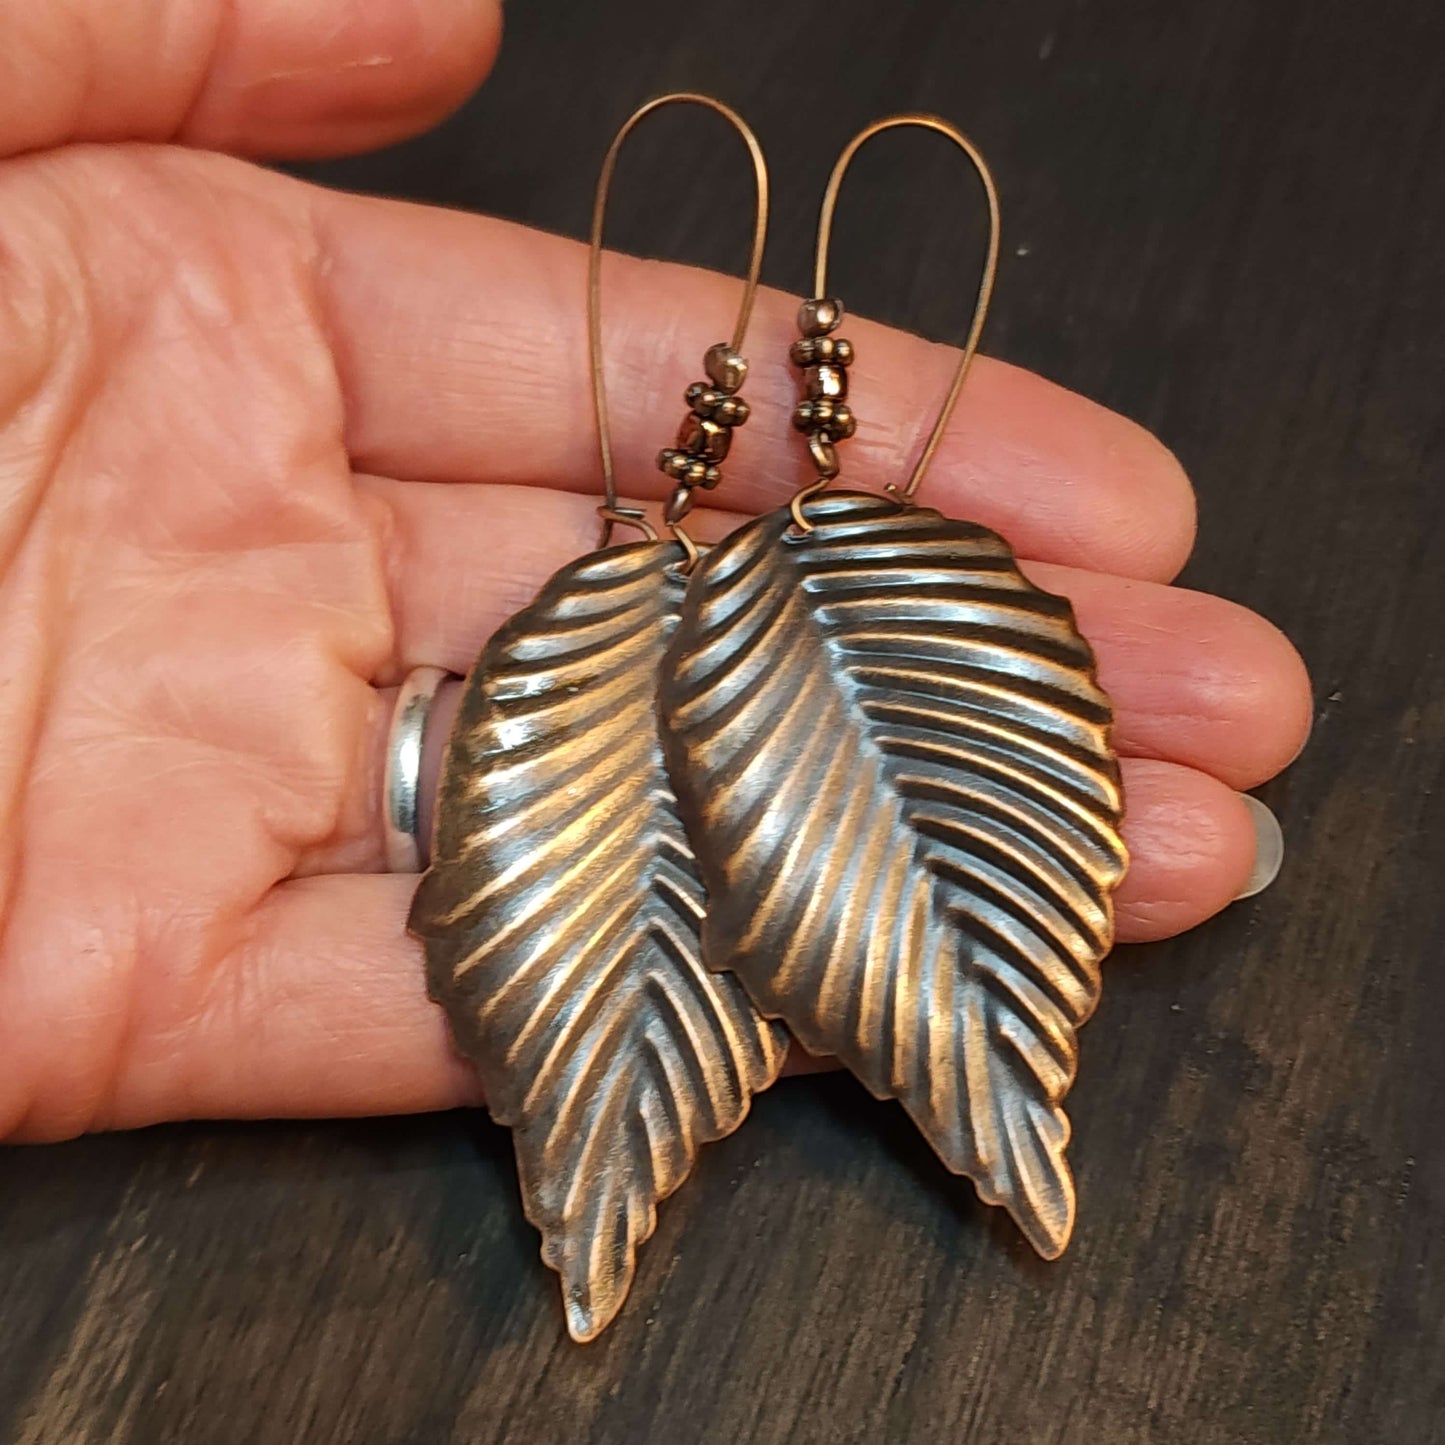 Large Copper Earrings, 54mm Leaf Earrings, Long Lightweight Earrings